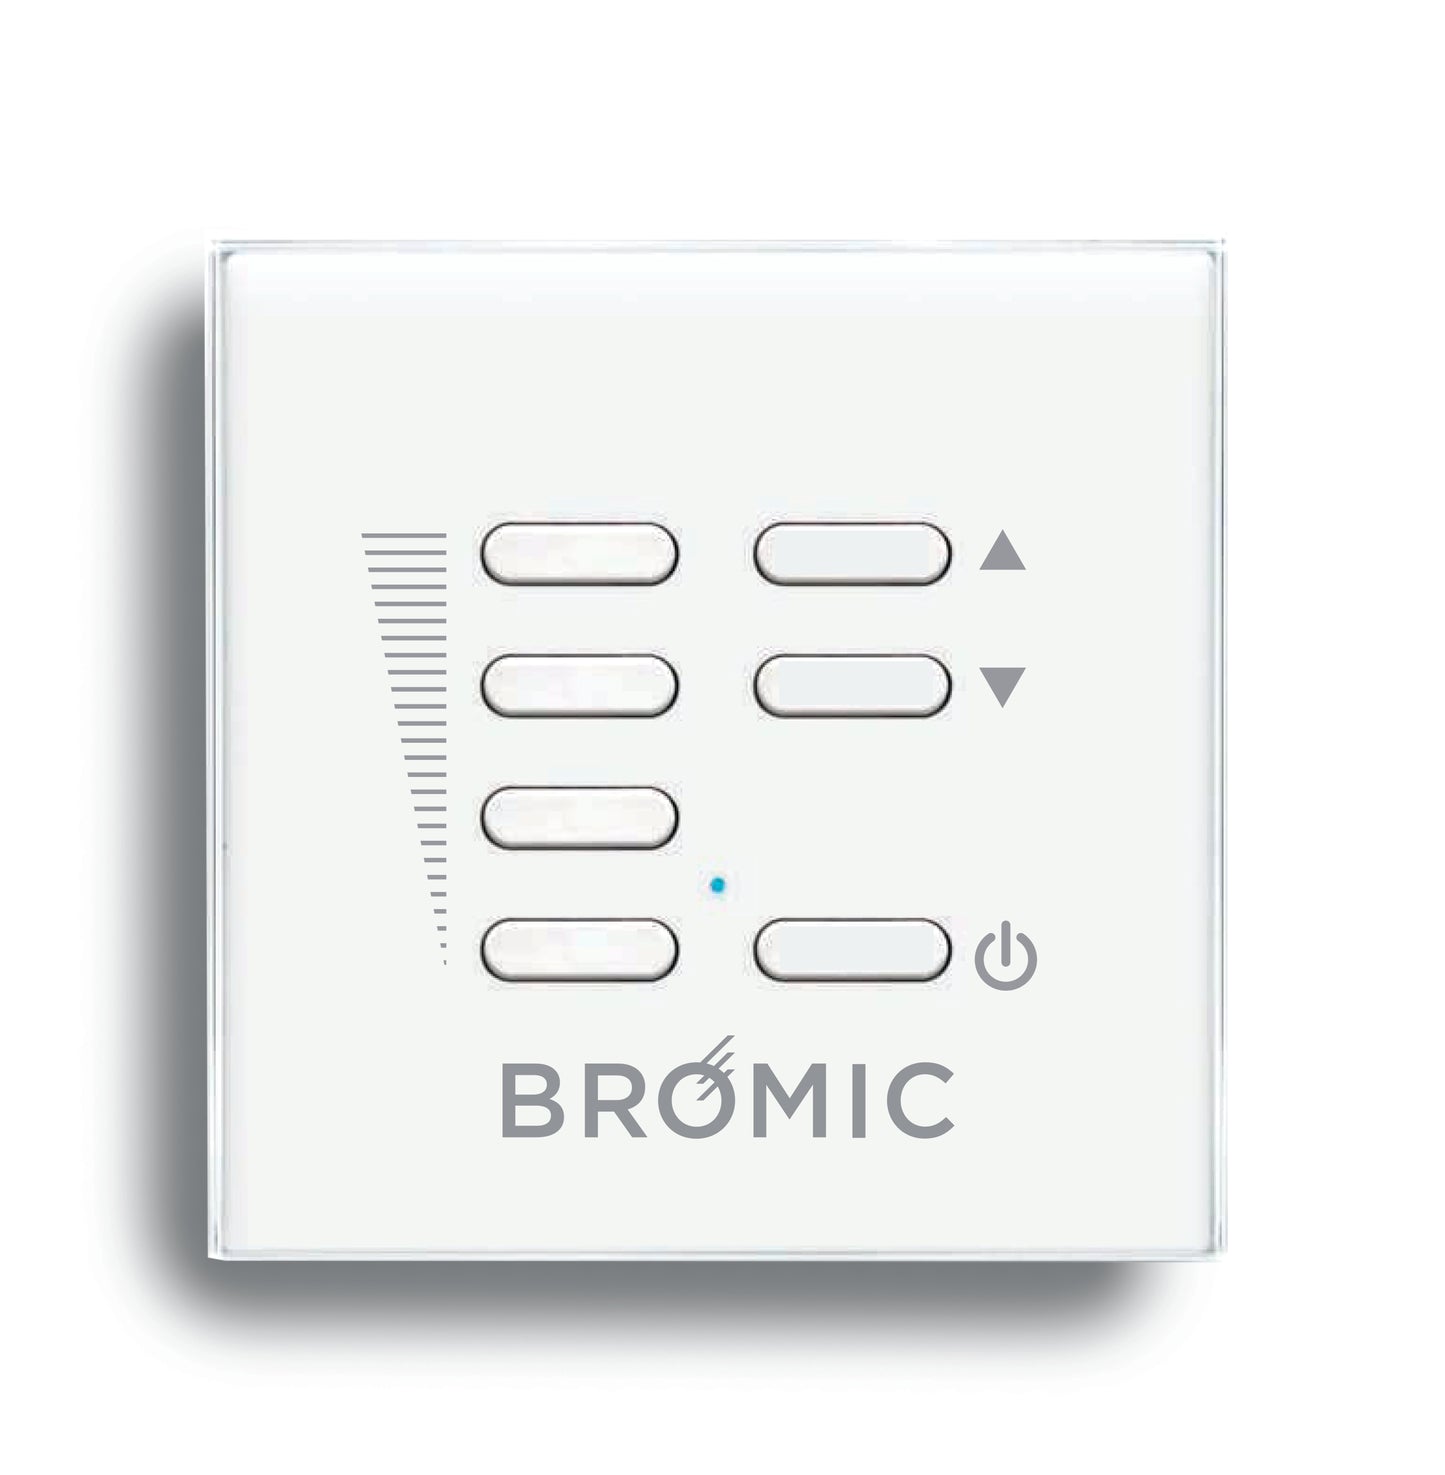 Bromic - Wireless Dimmer Controller